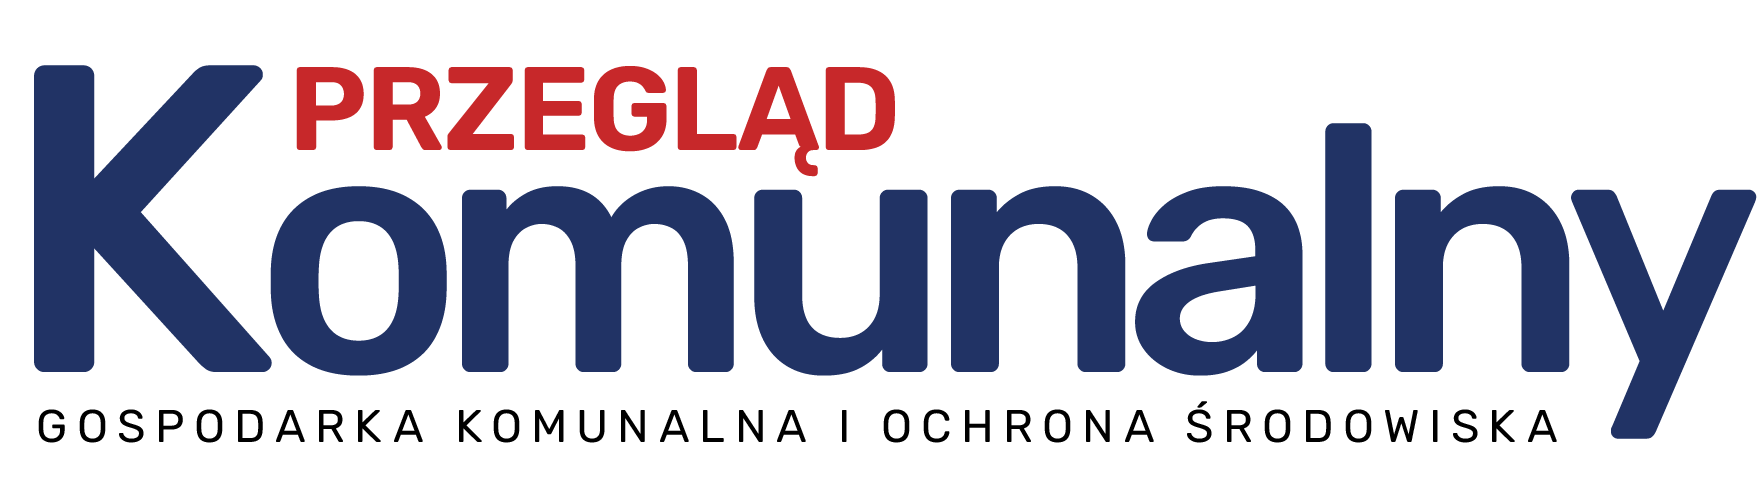 Logo miesięcznika Przegląd Komunalny